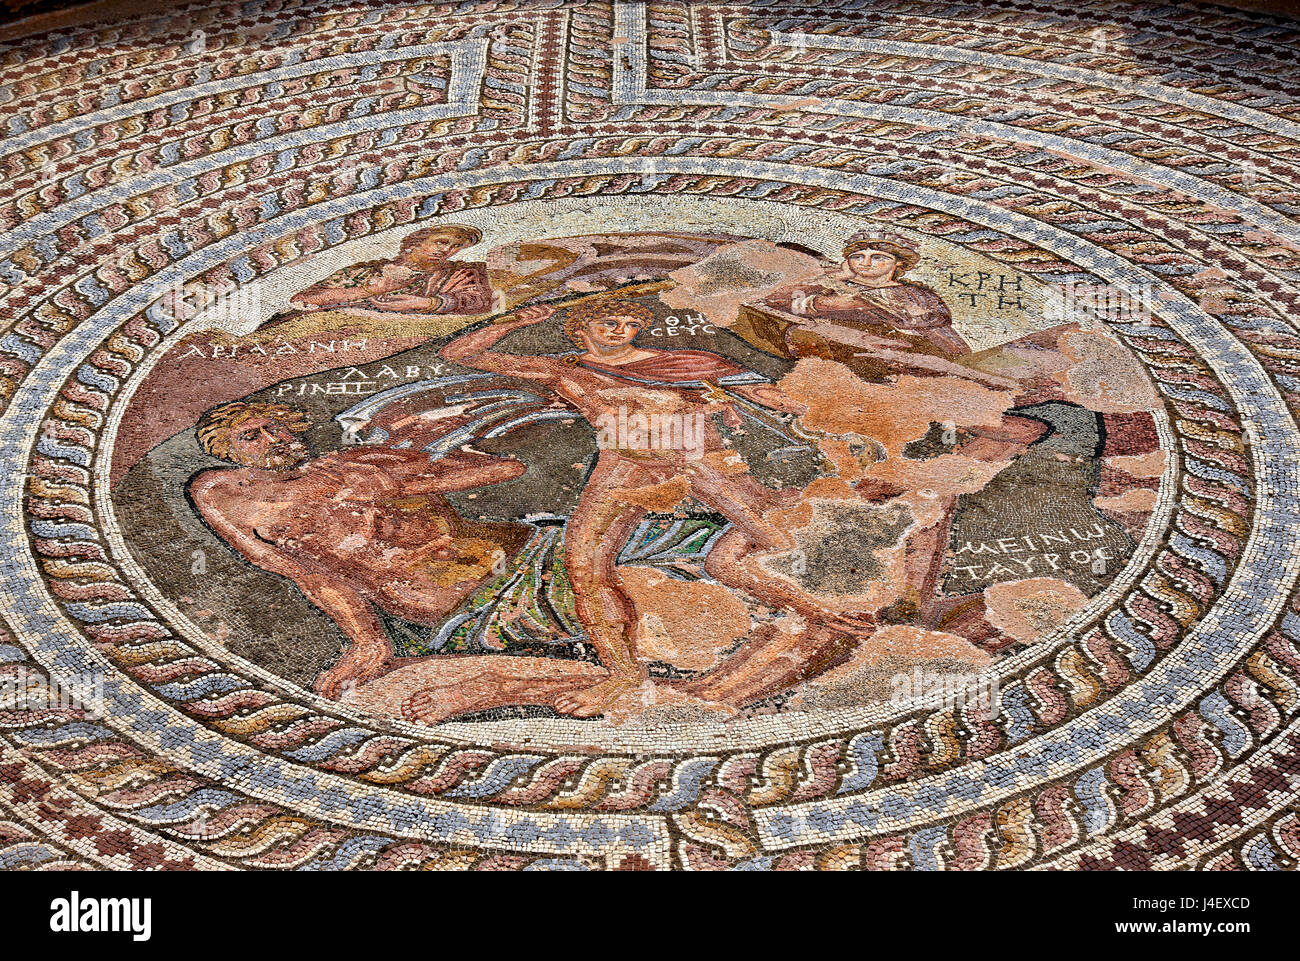 Imponente e ben conservato il mosaico in 'casa di Teseo', presso il Parco Archeologico di Kato Paphos (Patrimonio Mondiale dell'UNESCO), Cipro. Foto Stock